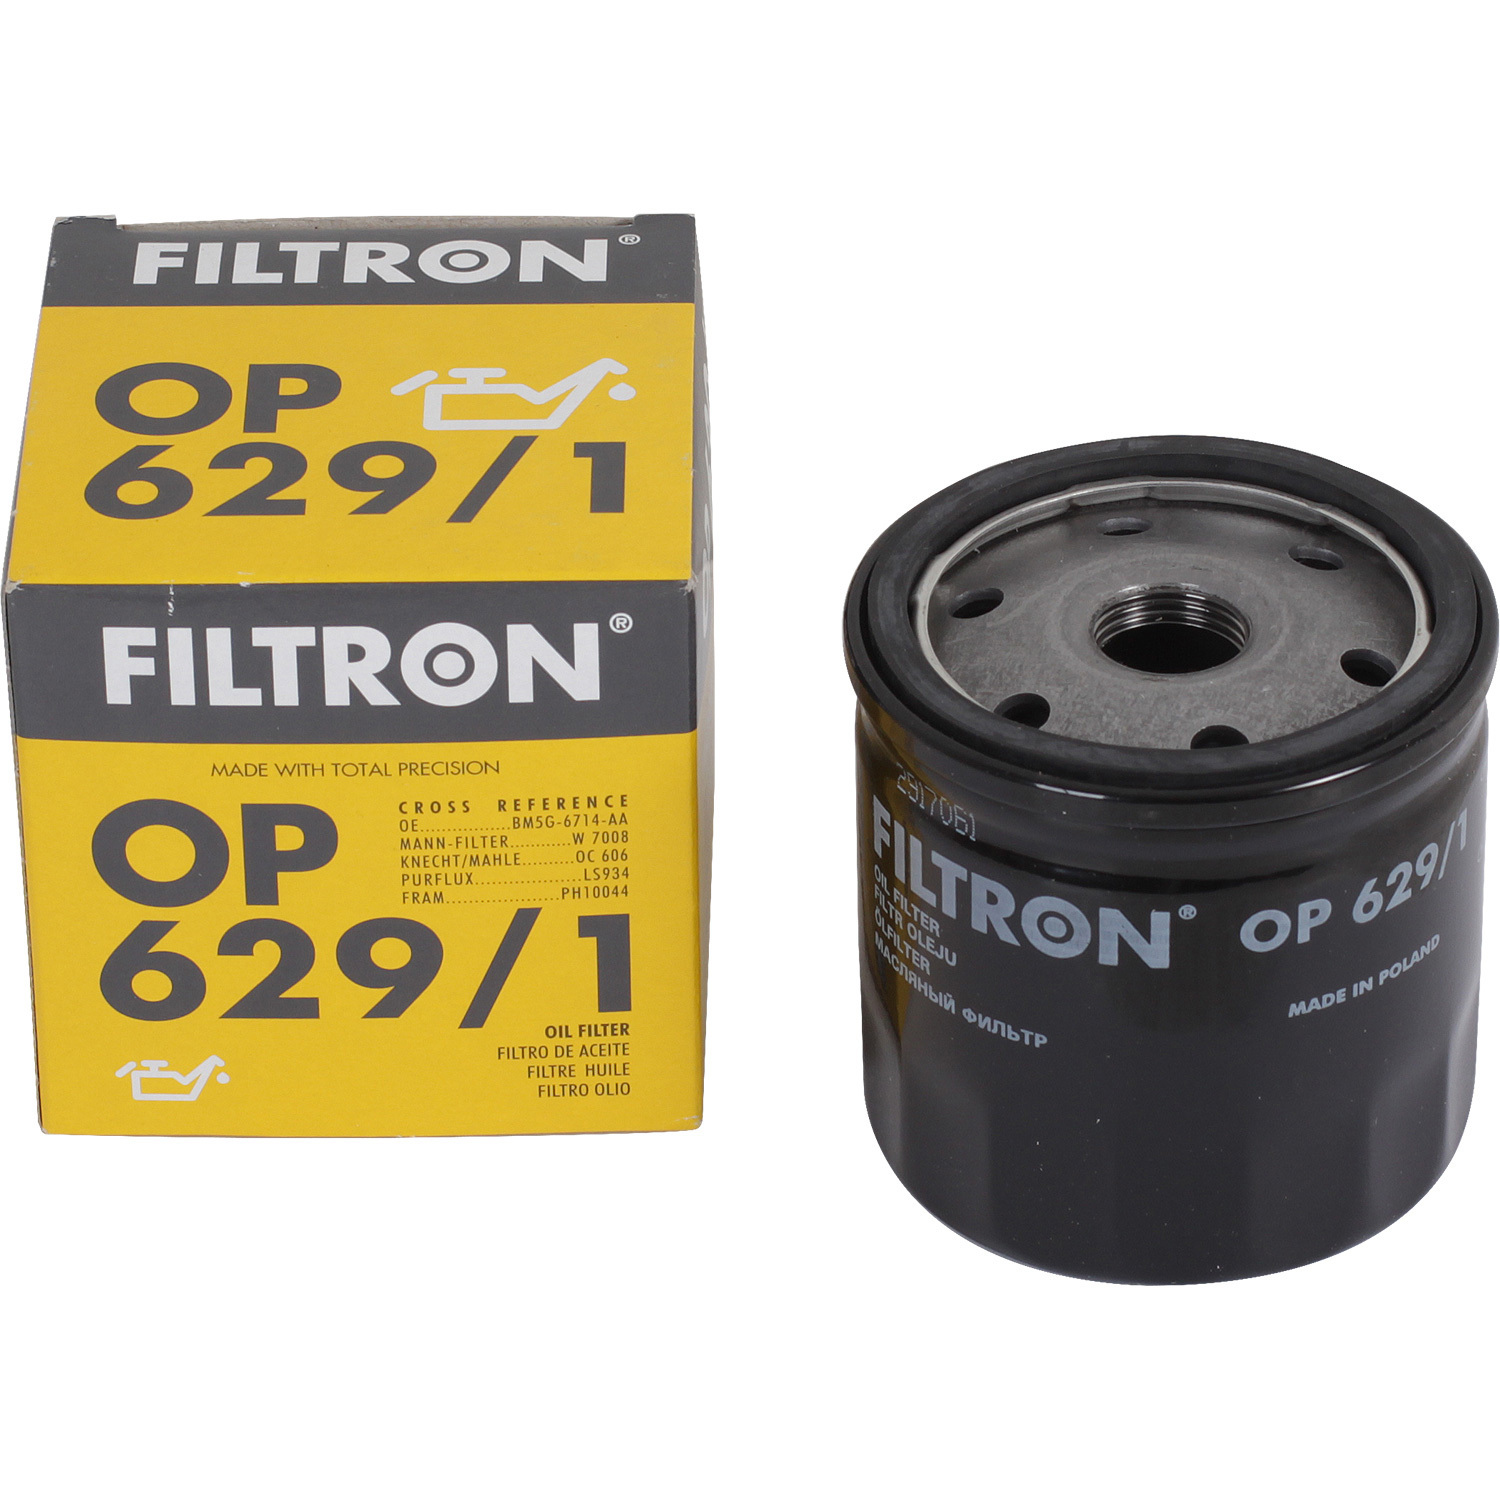 фильтры filtron фильтр масляный filtron op613 Фильтры Filtron Фильтр масляный Filtron OP6291